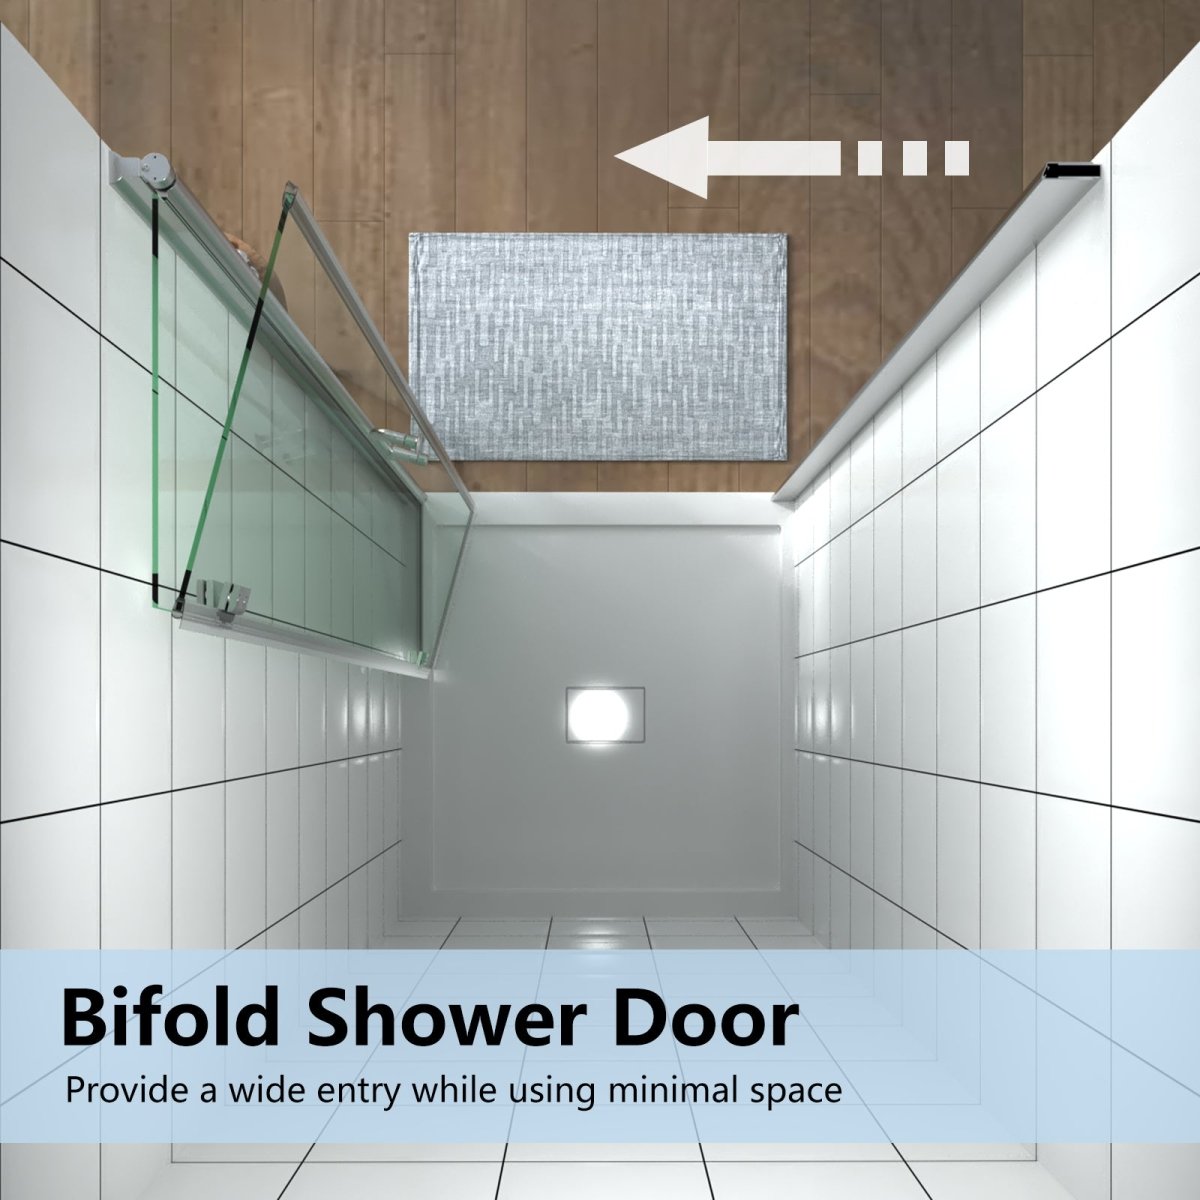 Adapt 34-35 1/2" W x 72" H Folding Semi-Frameless Swing Hinged Shower Doors in Chrome